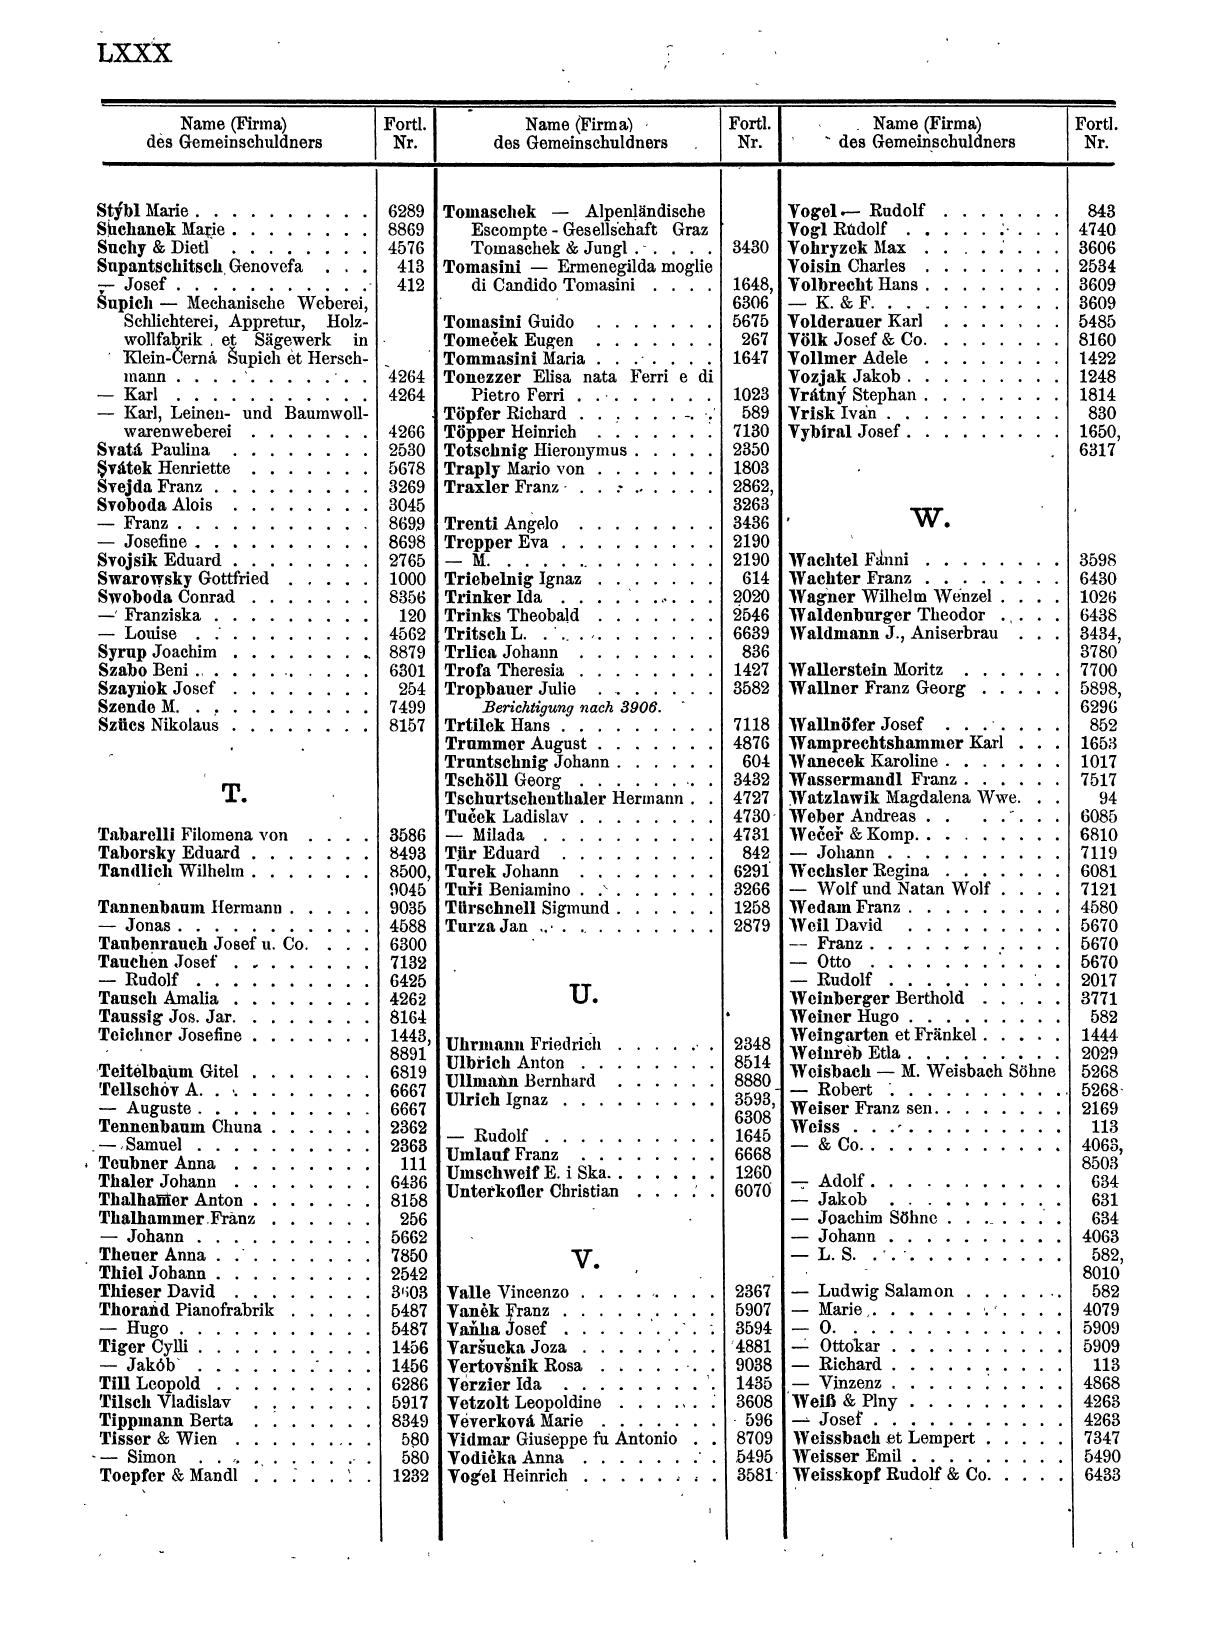 Zentralblatt für die Eintragungen in das Handelsregister 1913, Teil 1 - Seite 88